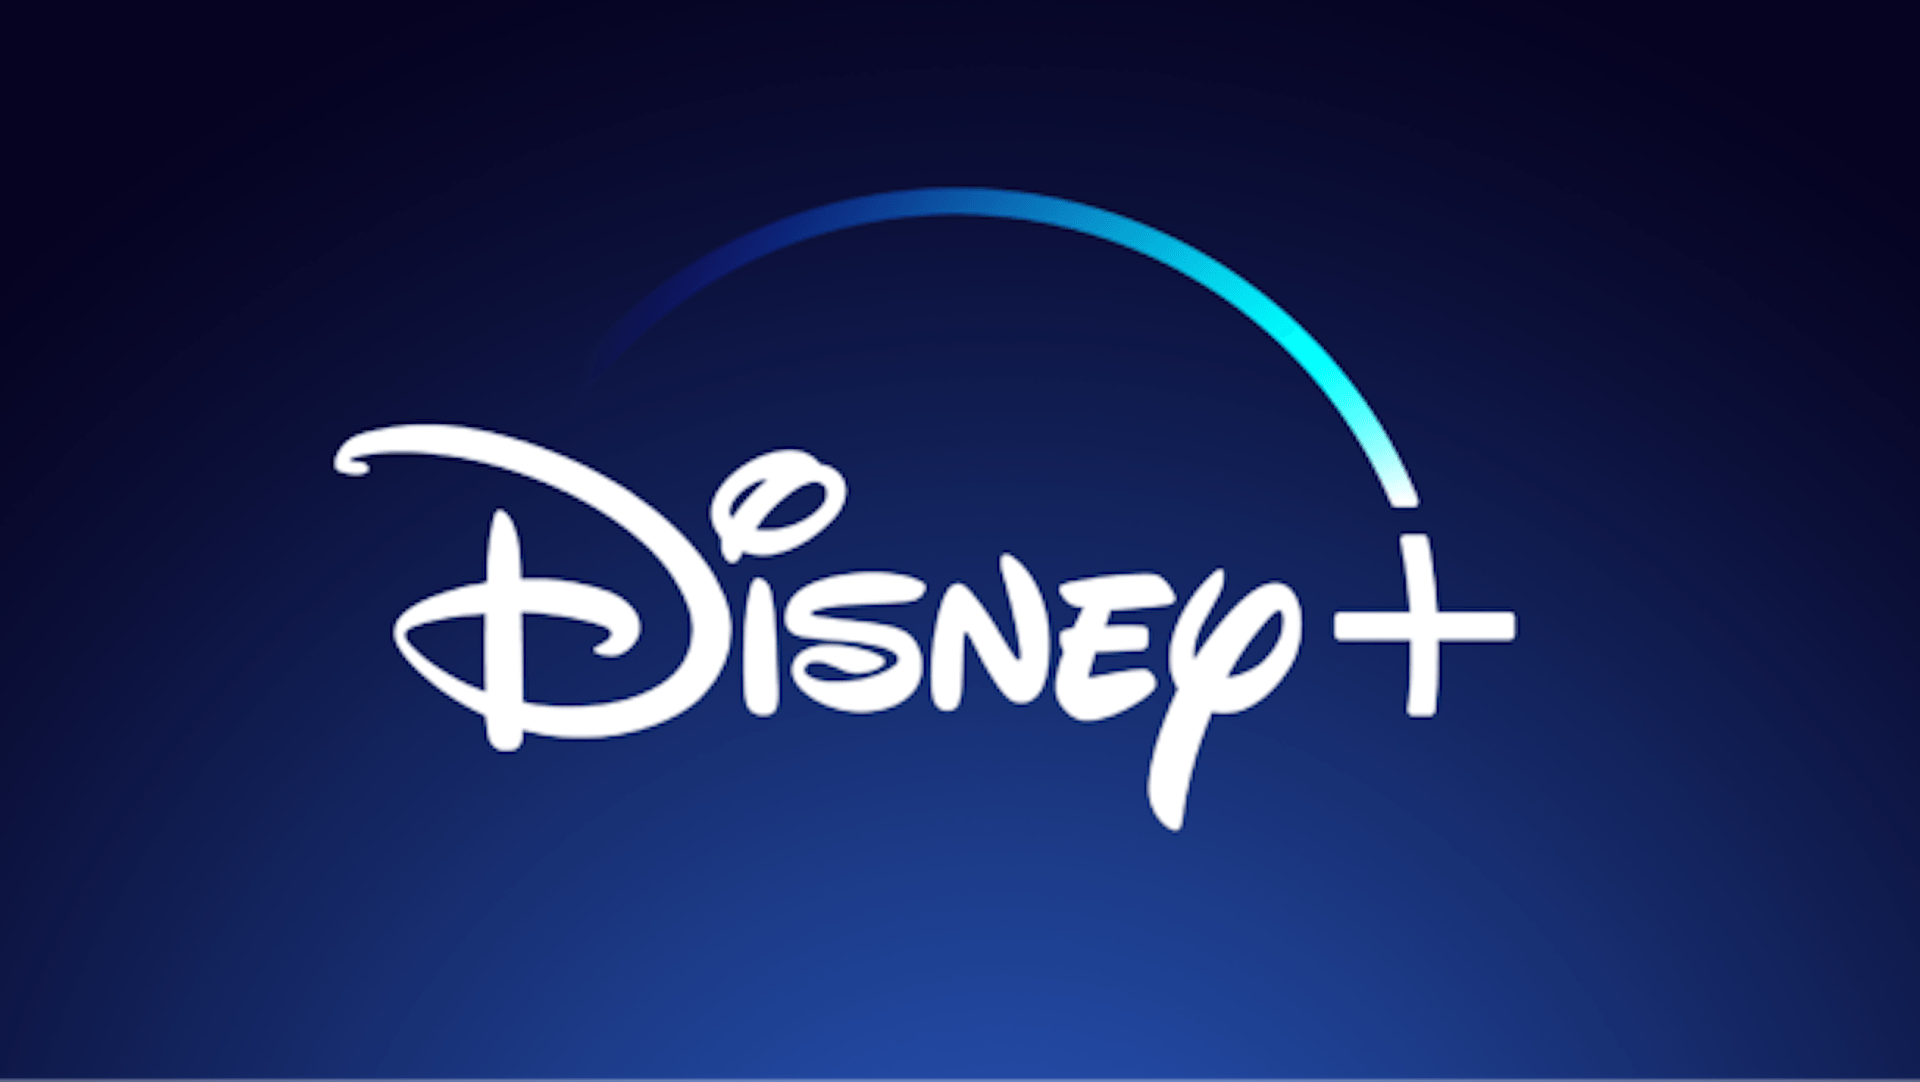 Disney+ a doublé son nombre d'abonnés en un an